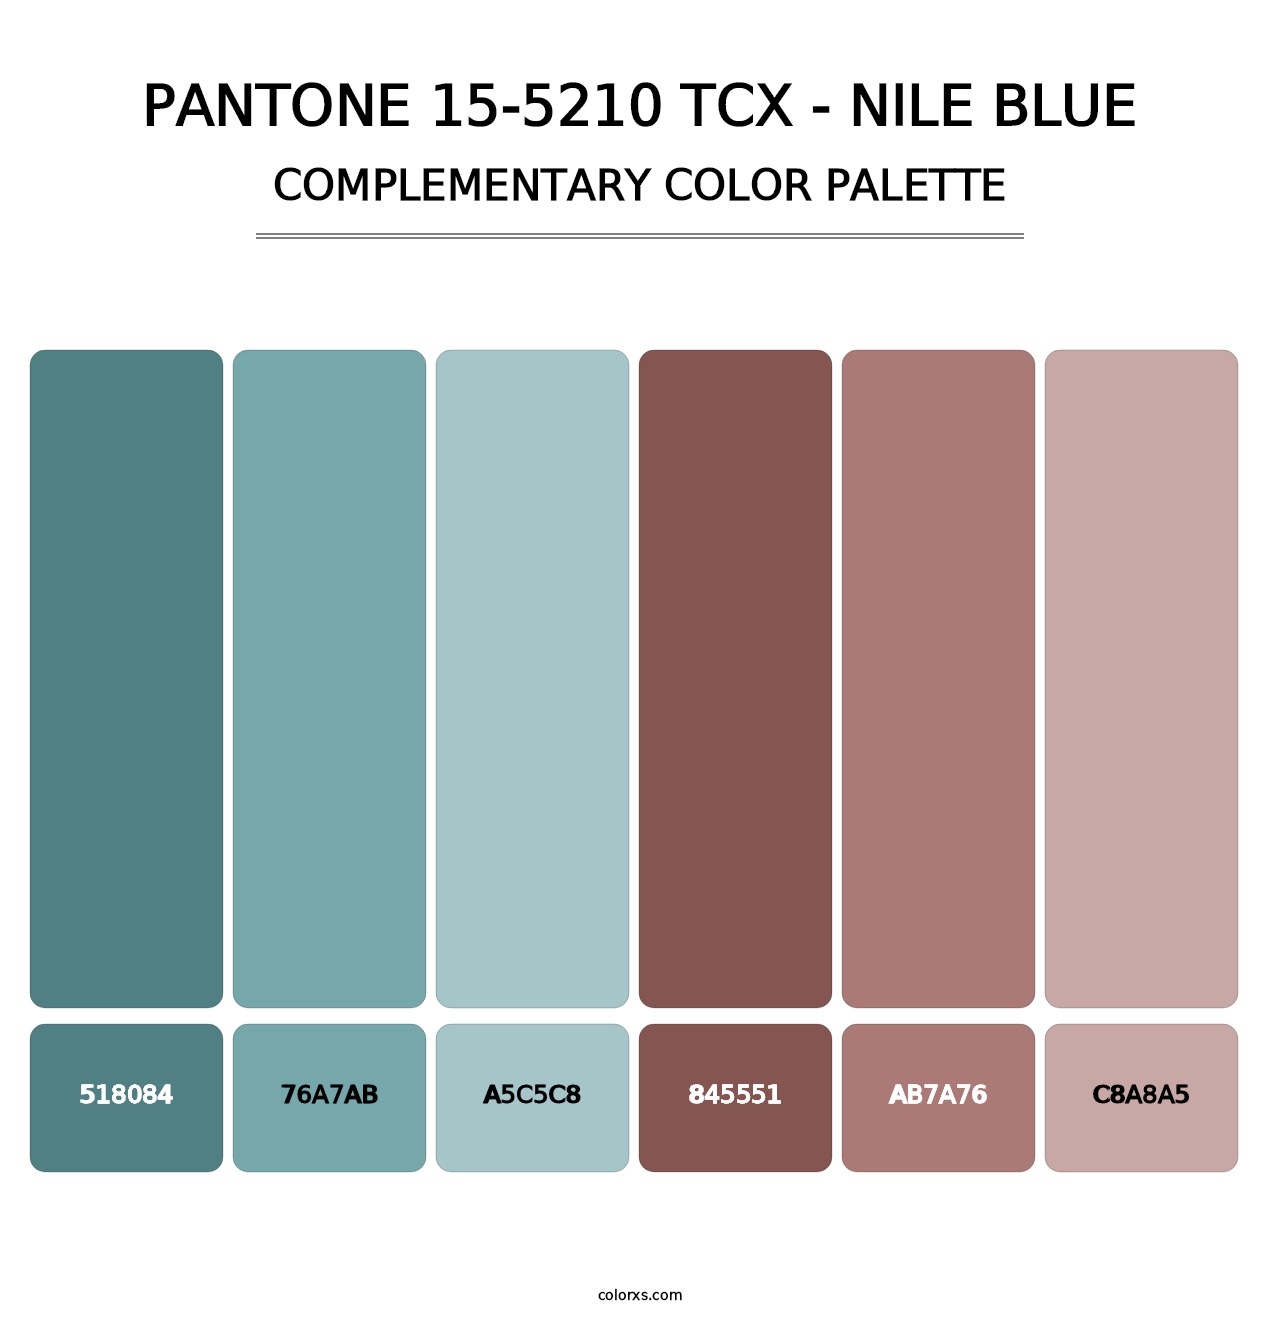 PANTONE 15-5210 TCX - Nile Blue - Complementary Color Palette